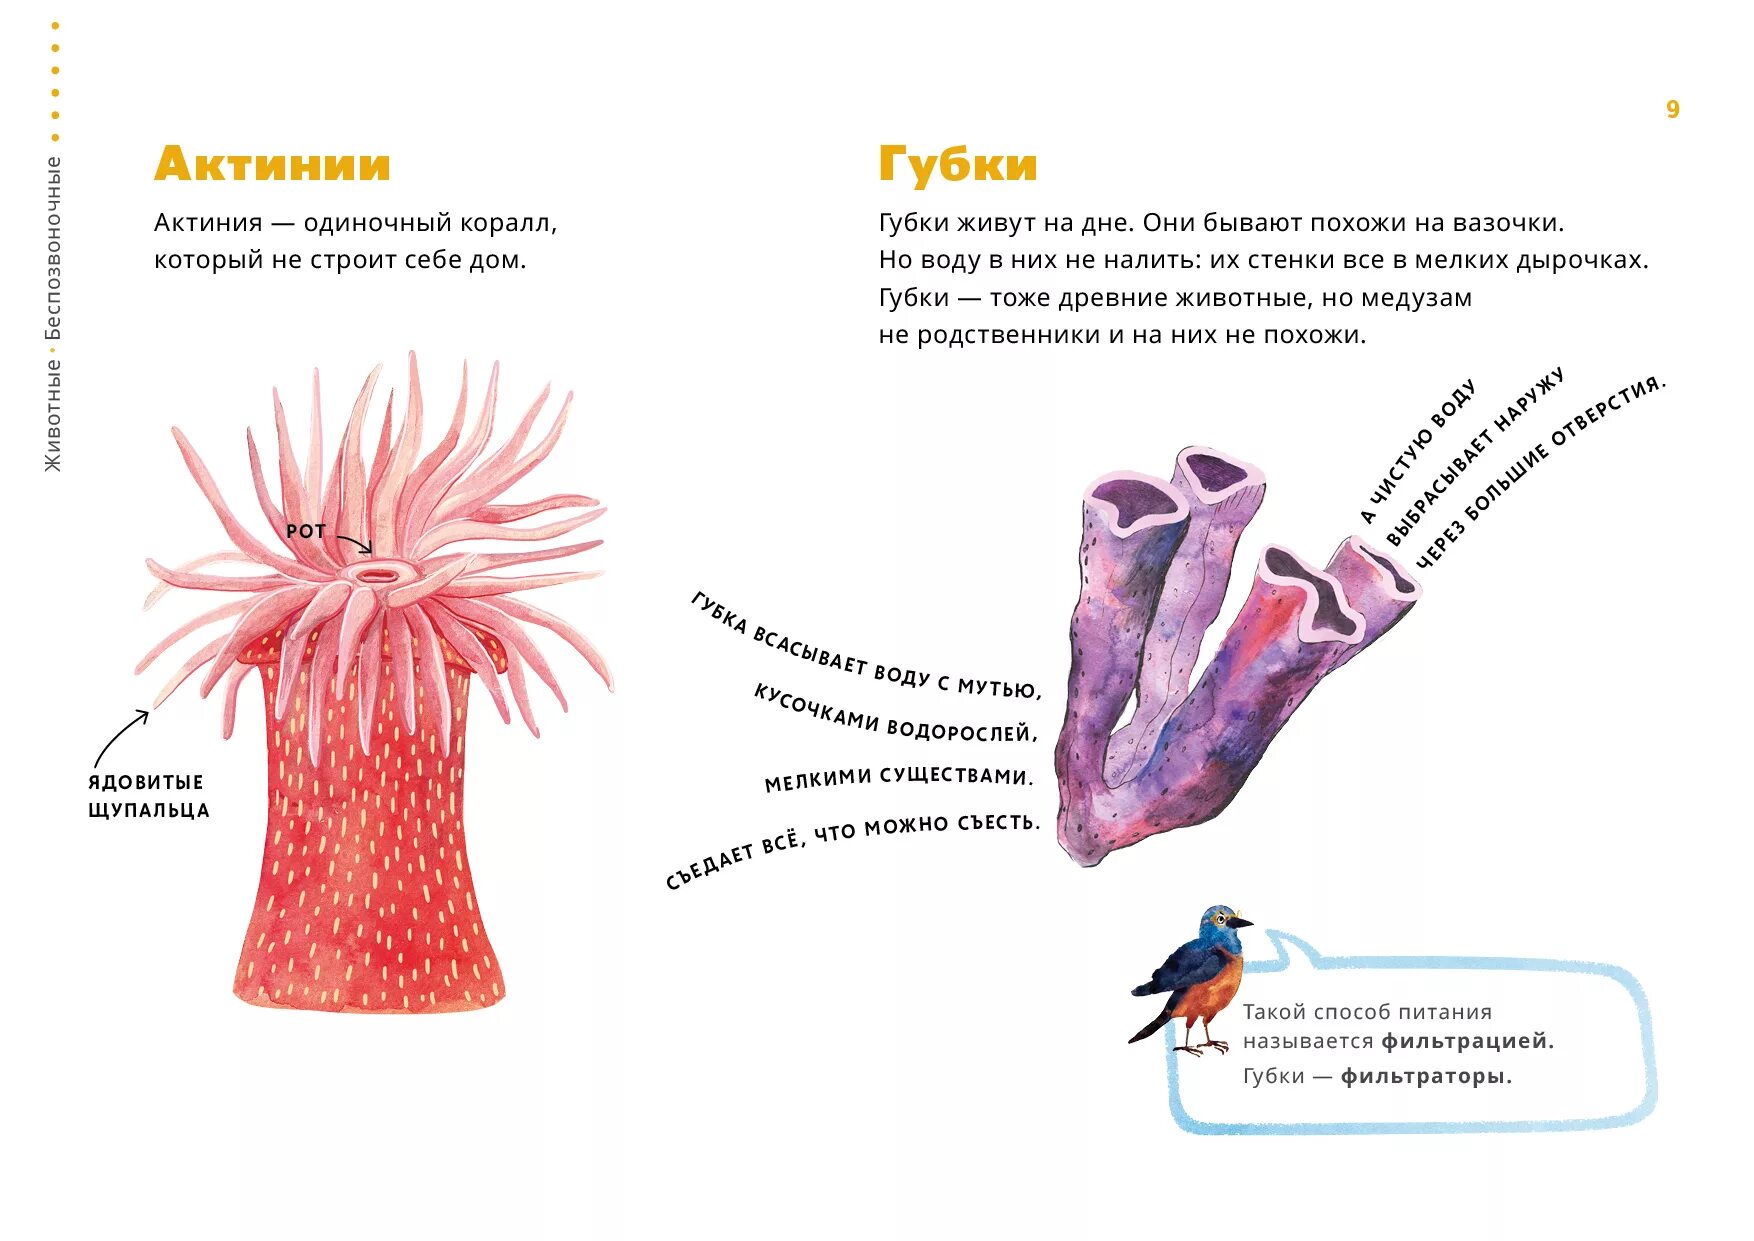 Части тела медузы и актинии. Строение актинии рисунок. Актиния размножение схема. Как называются части тела медузы и актинии.